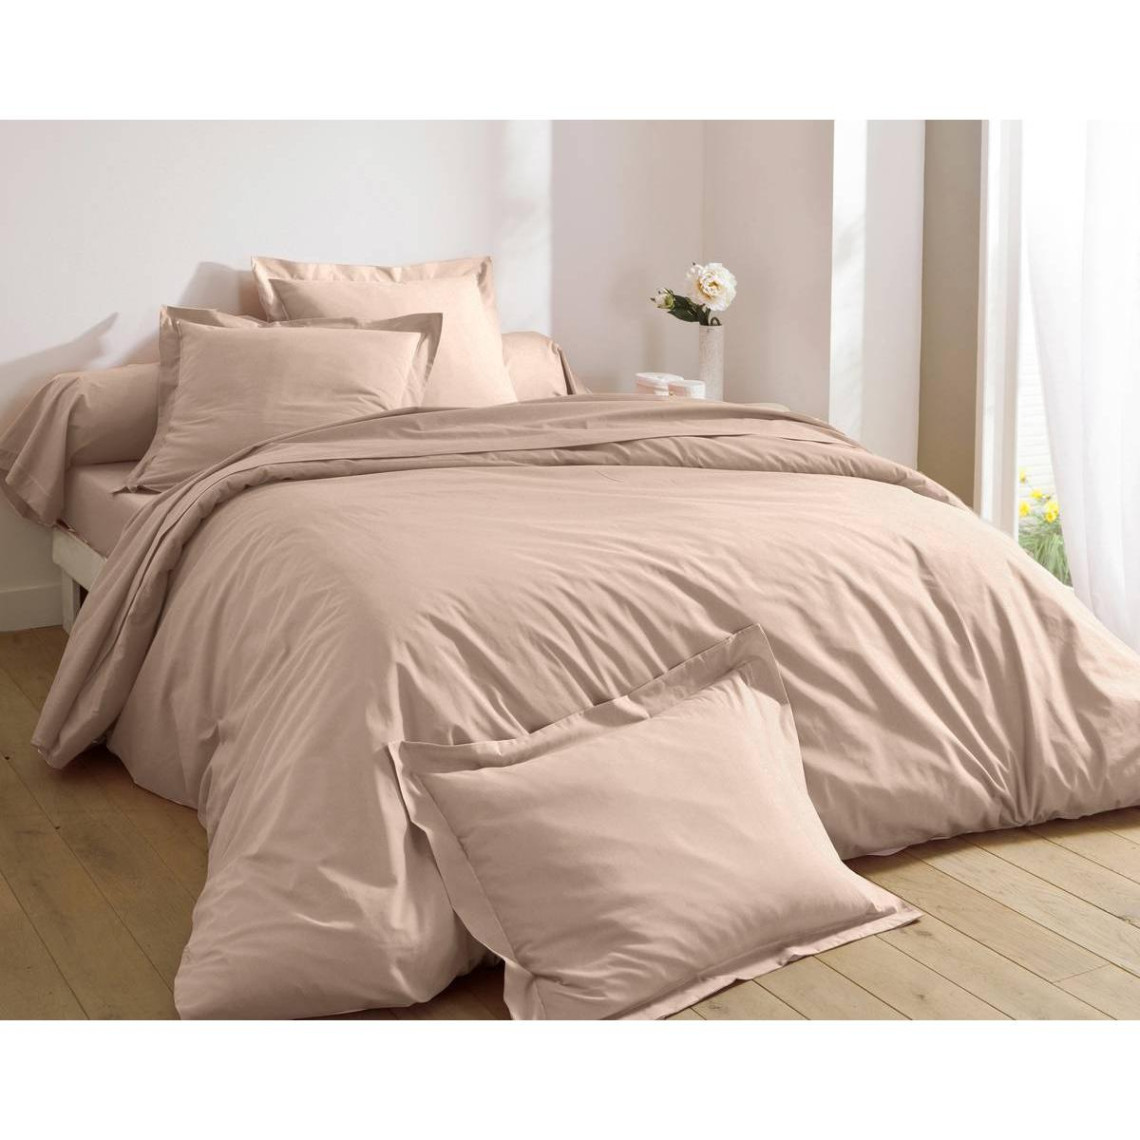 Nouveau luxe thermique Flanelle couleur unie Bedding Sets de couette 100% coton 